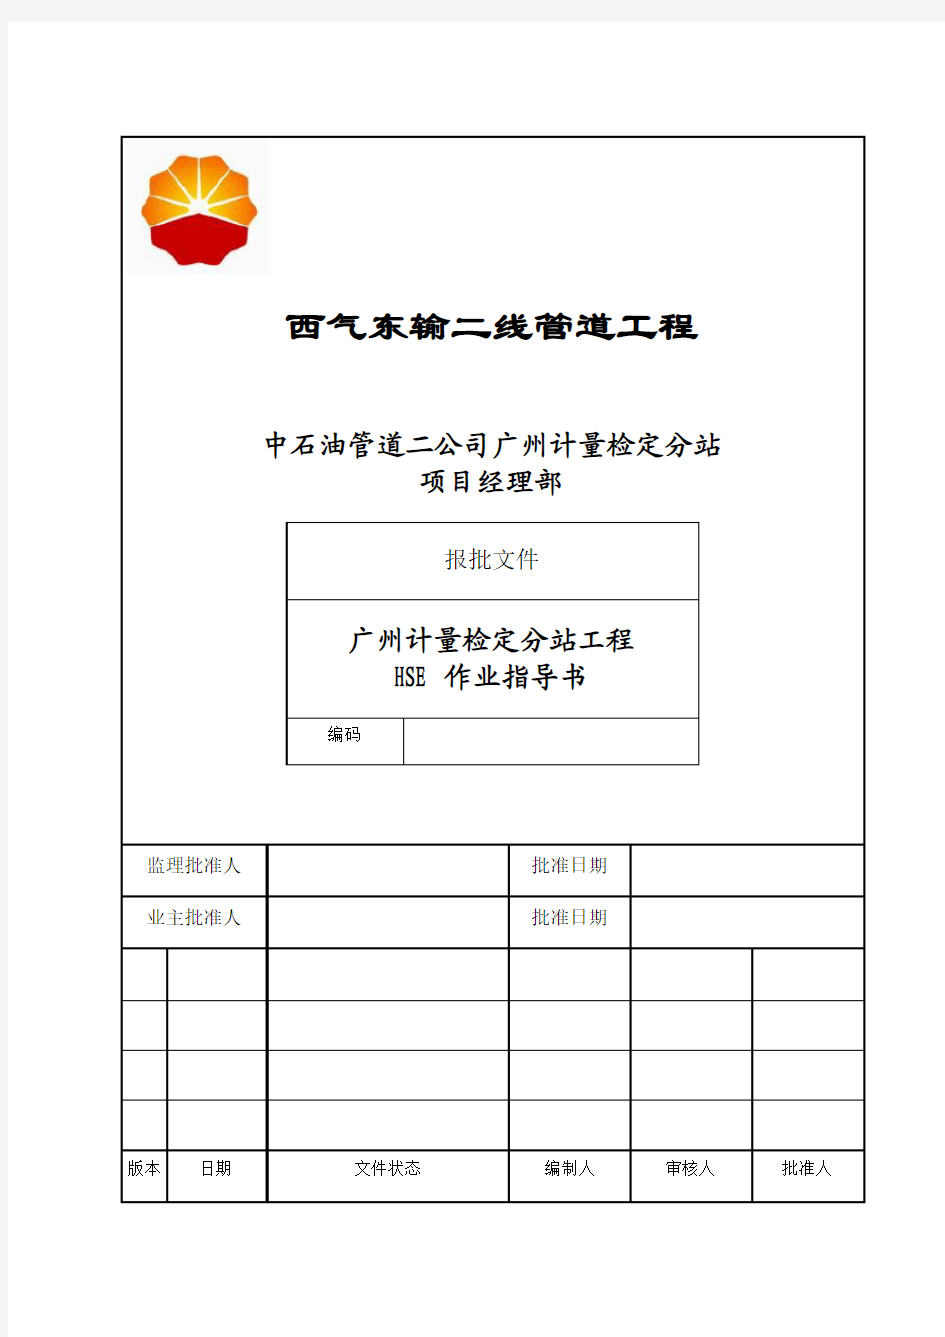 西气东输二线管道工程广州计量检定分站工程HSE作业指导书